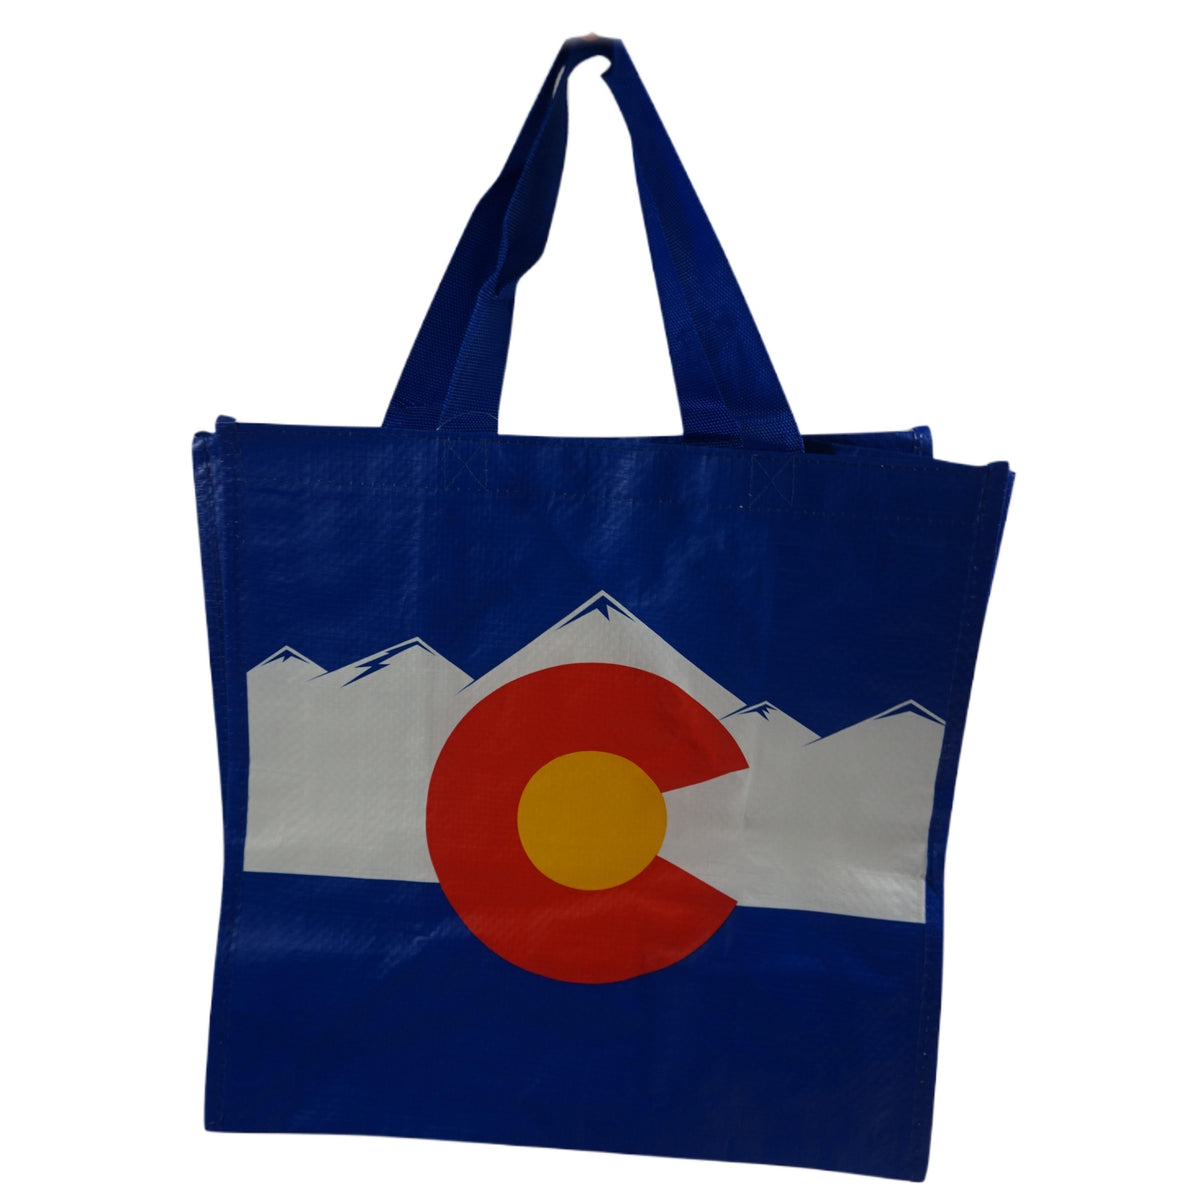 H. Colorado Tote Bag